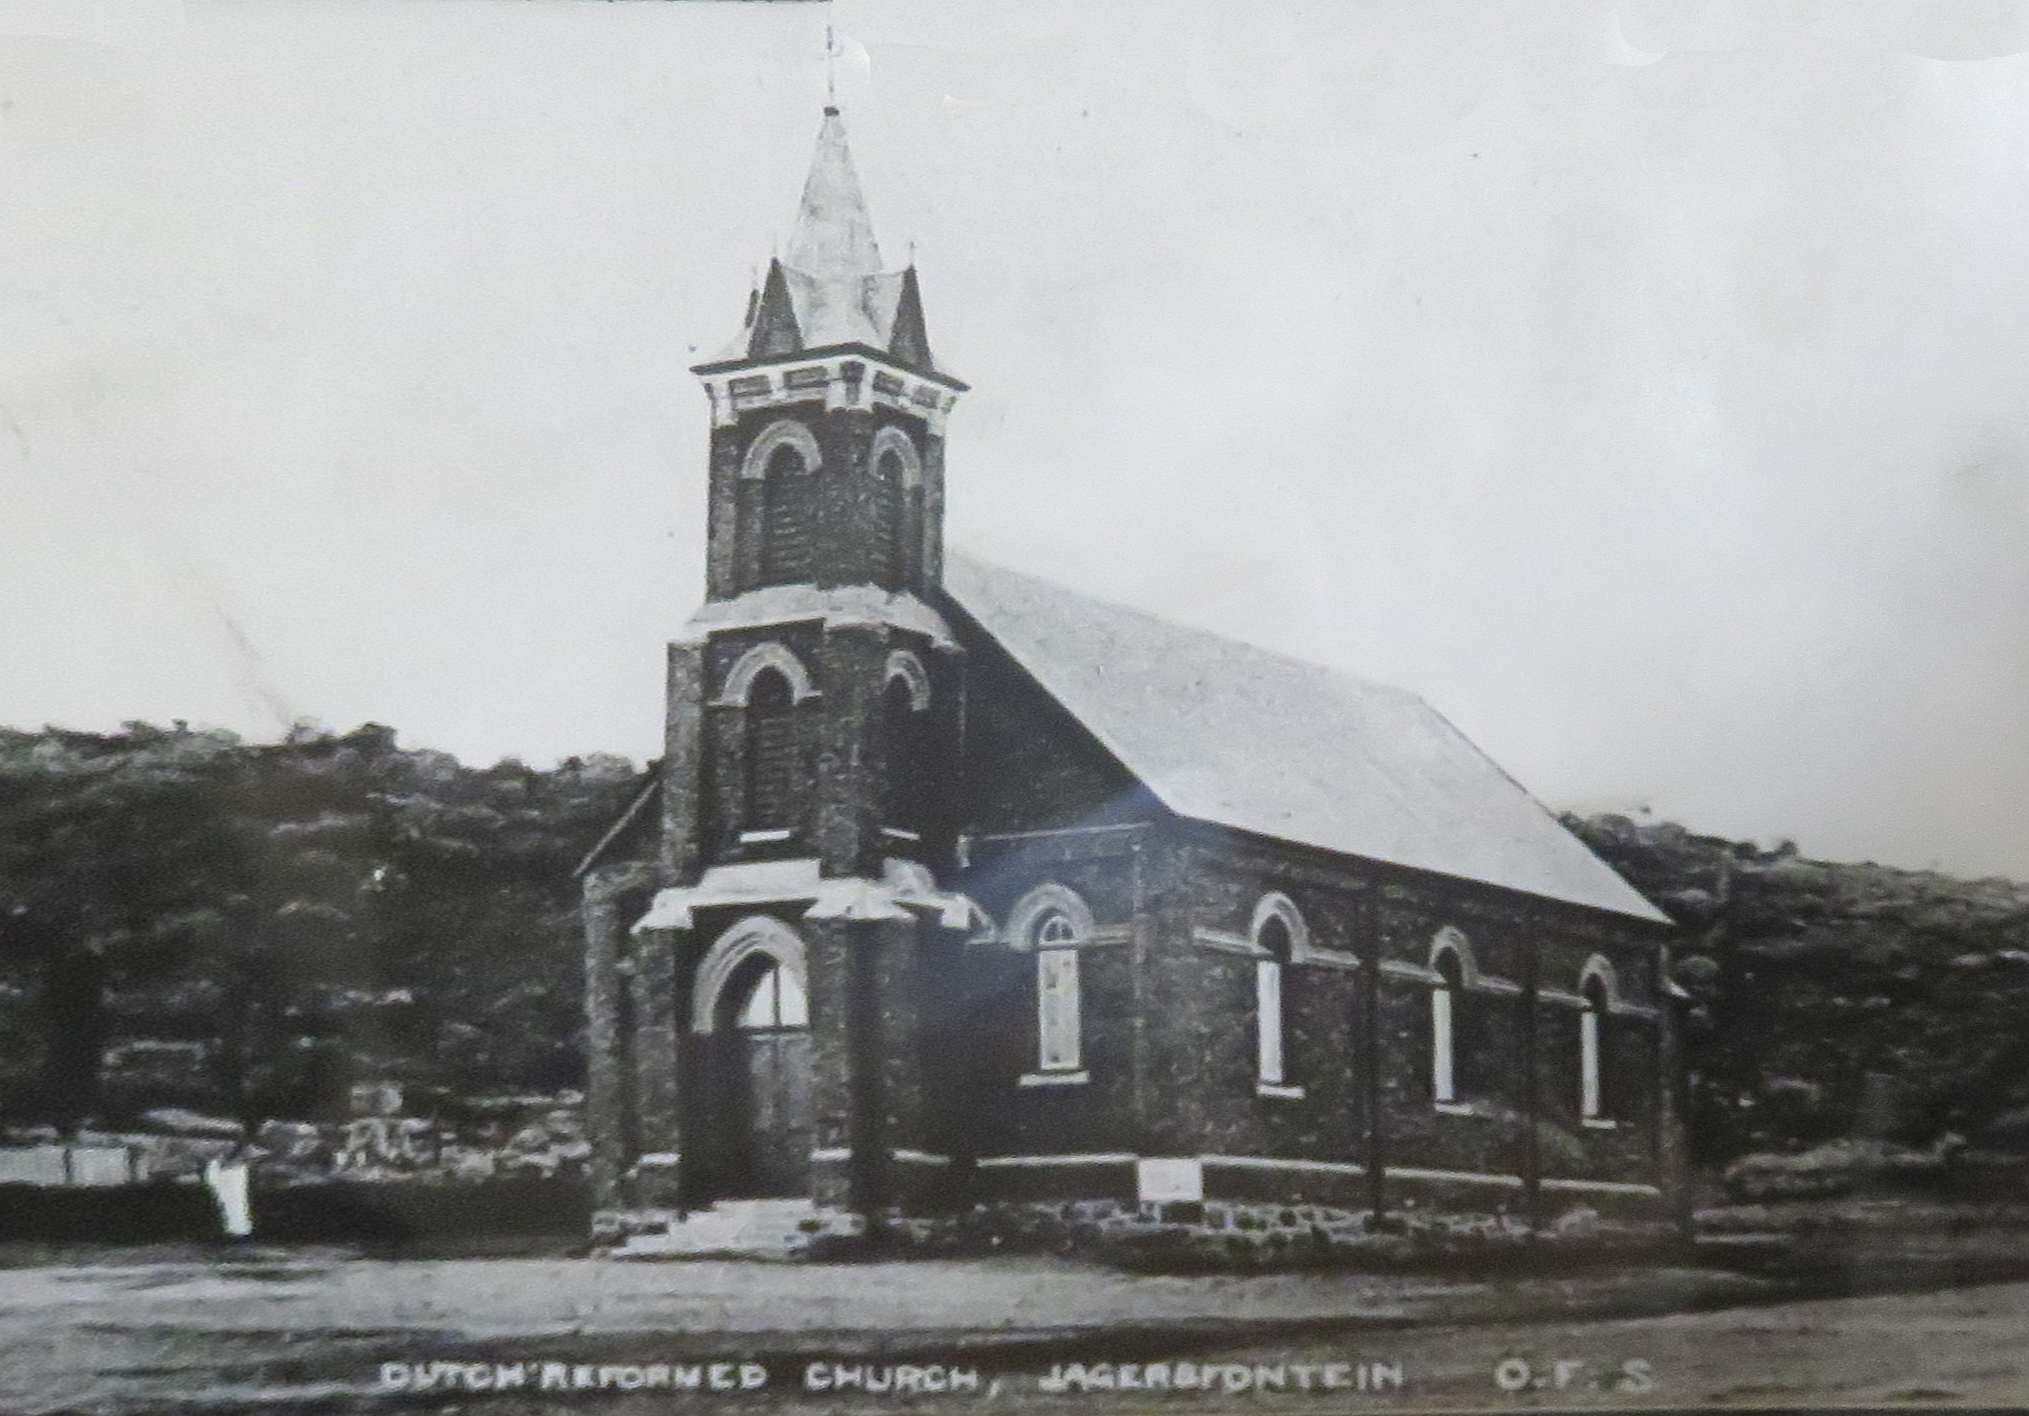 Jagersfontein old NG church